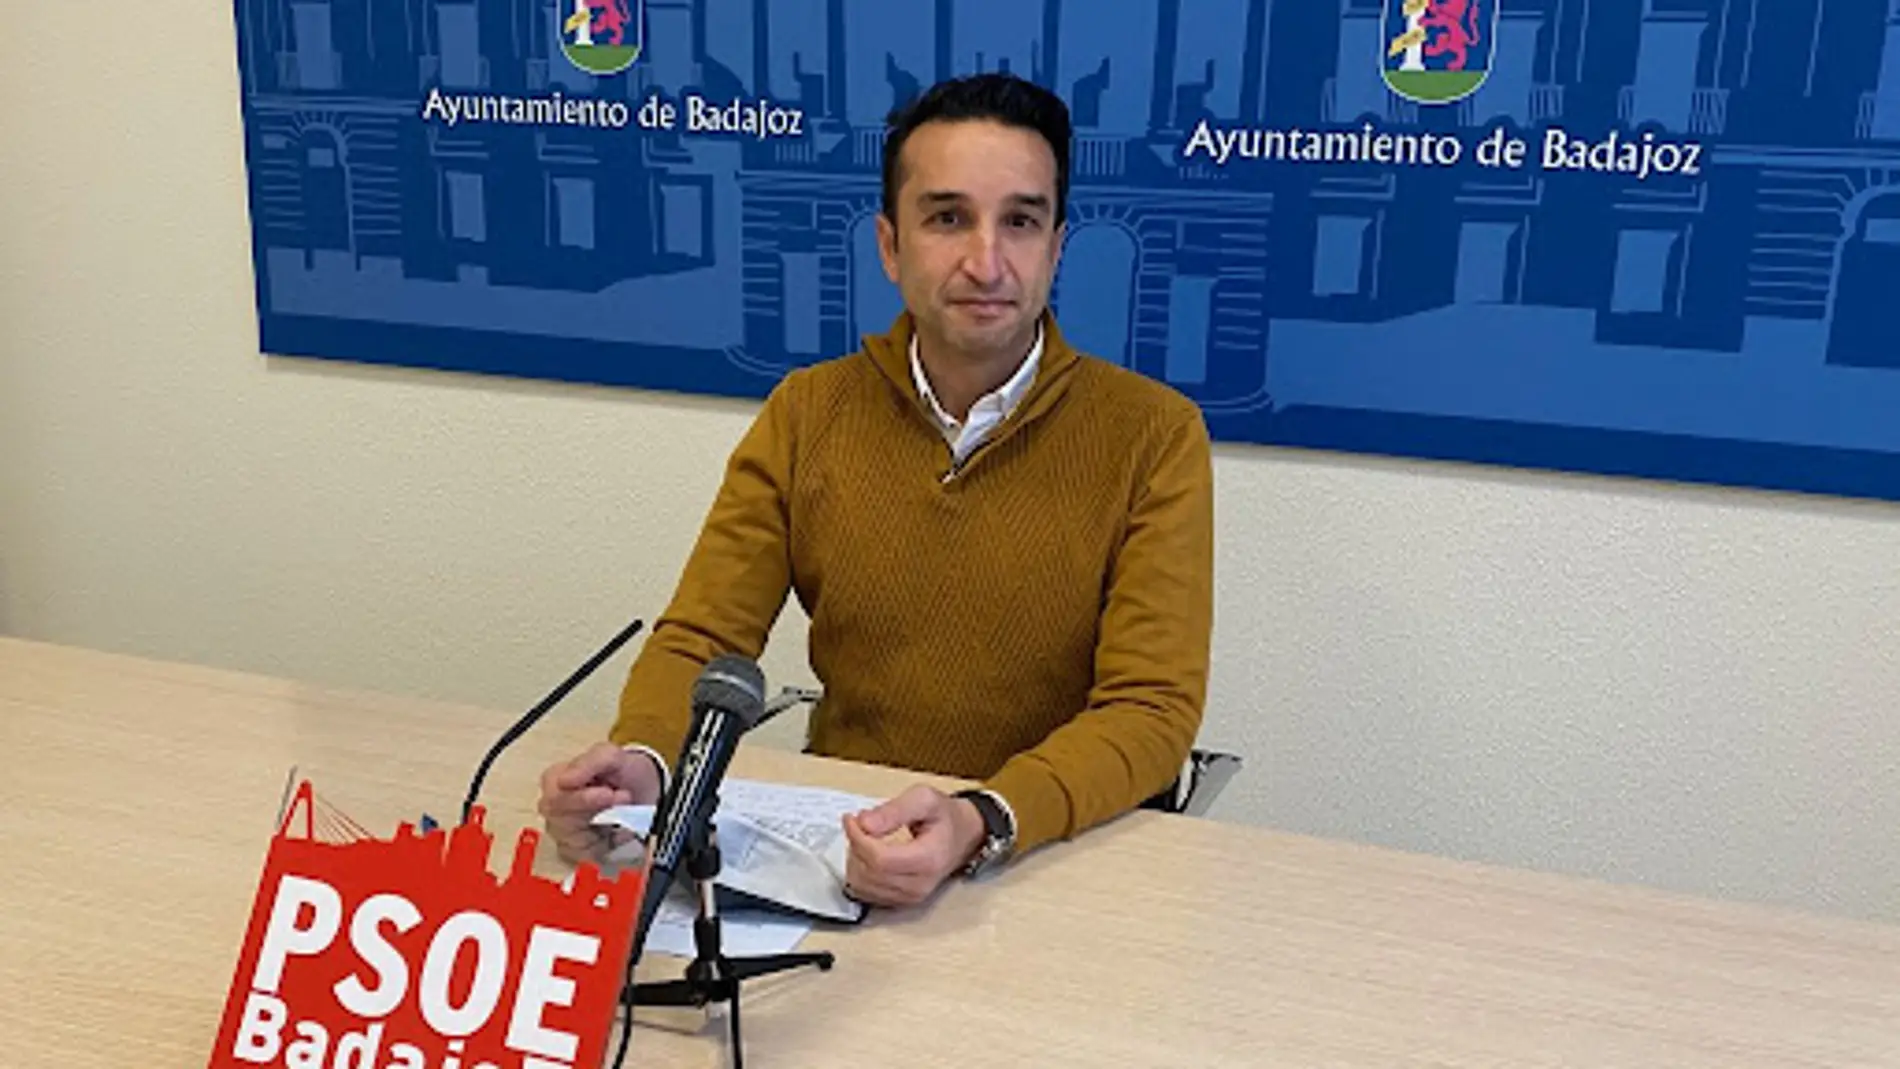 El PSOE de Badajoz pide al alcalde el informe sobre los sueldos de los trabajadores que "echó para atrás"